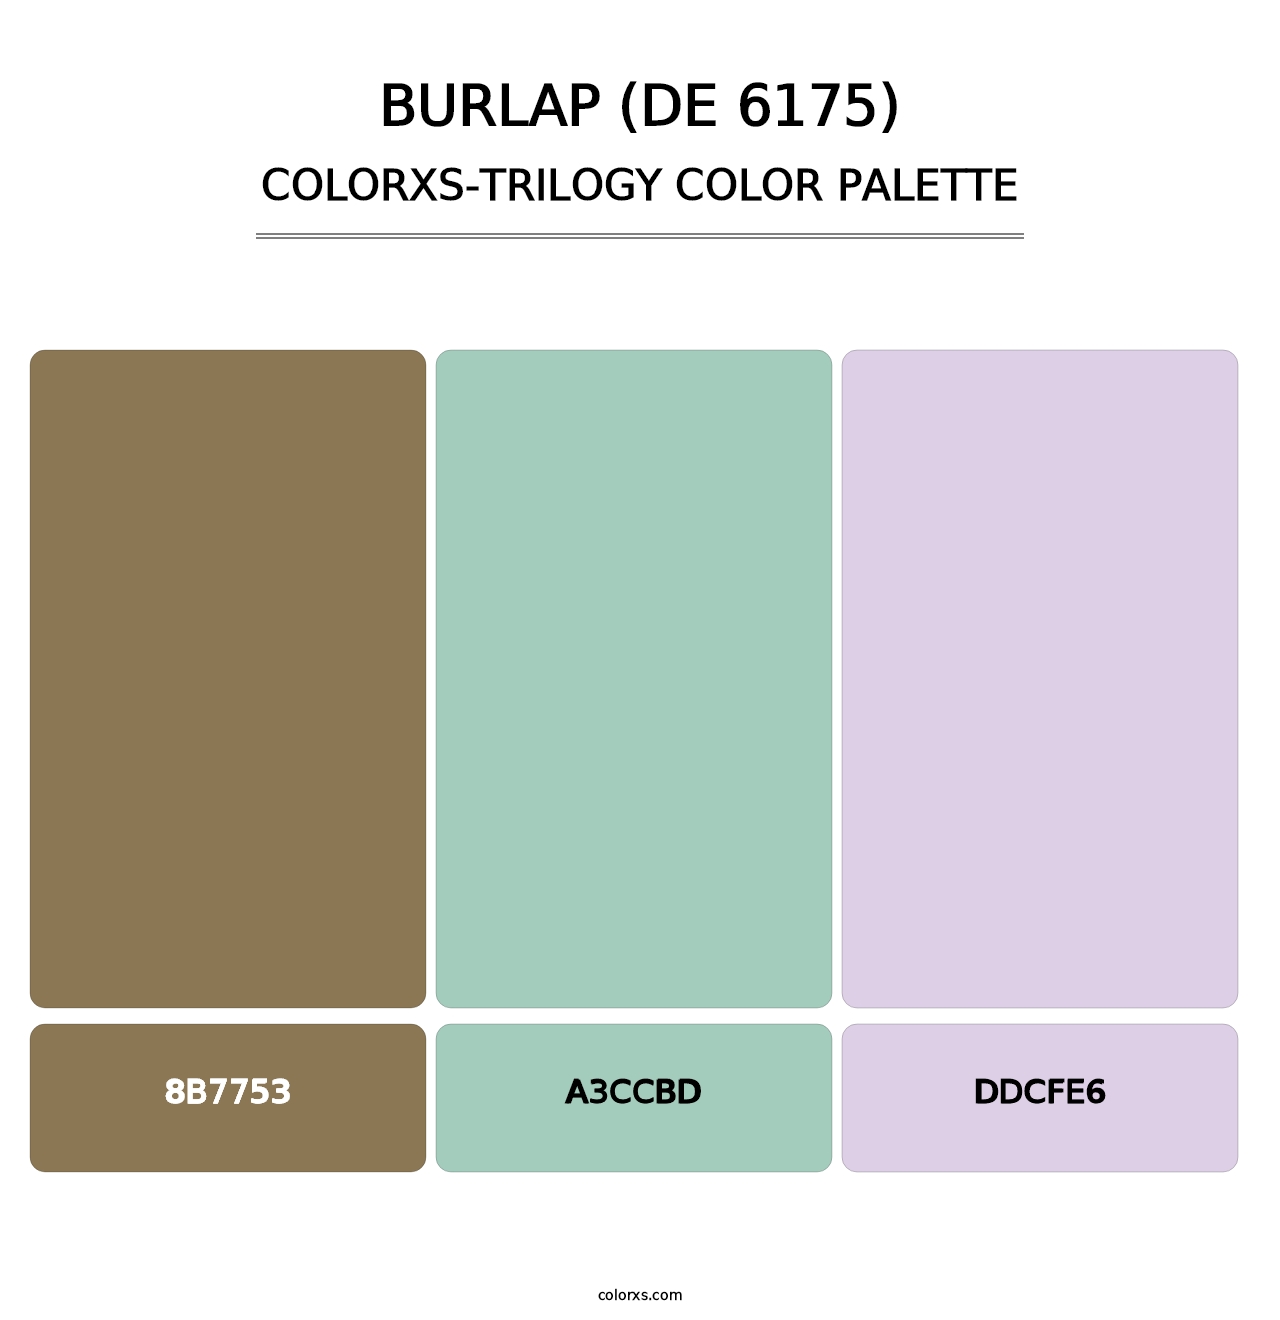 Burlap (DE 6175) - Colorxs Trilogy Palette